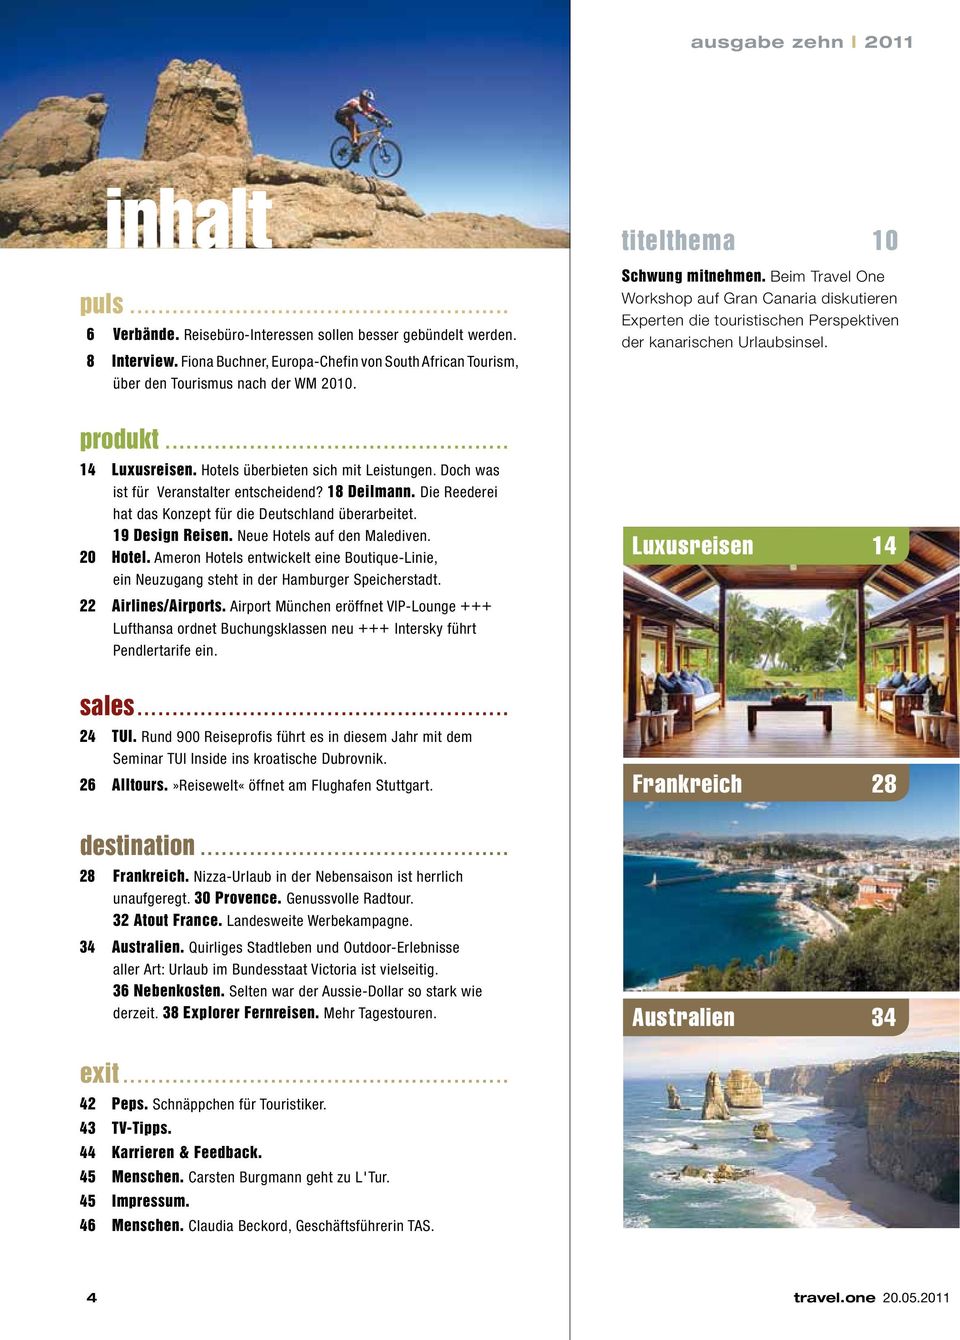 Beim Travel One Workshop auf Gran Canaria diskutieren Experten die touristischen Perspektiven der kanarischen Urlaubsinsel. produkt... 14 Luxusreisen. Hotels überbieten sich mit Leistungen.